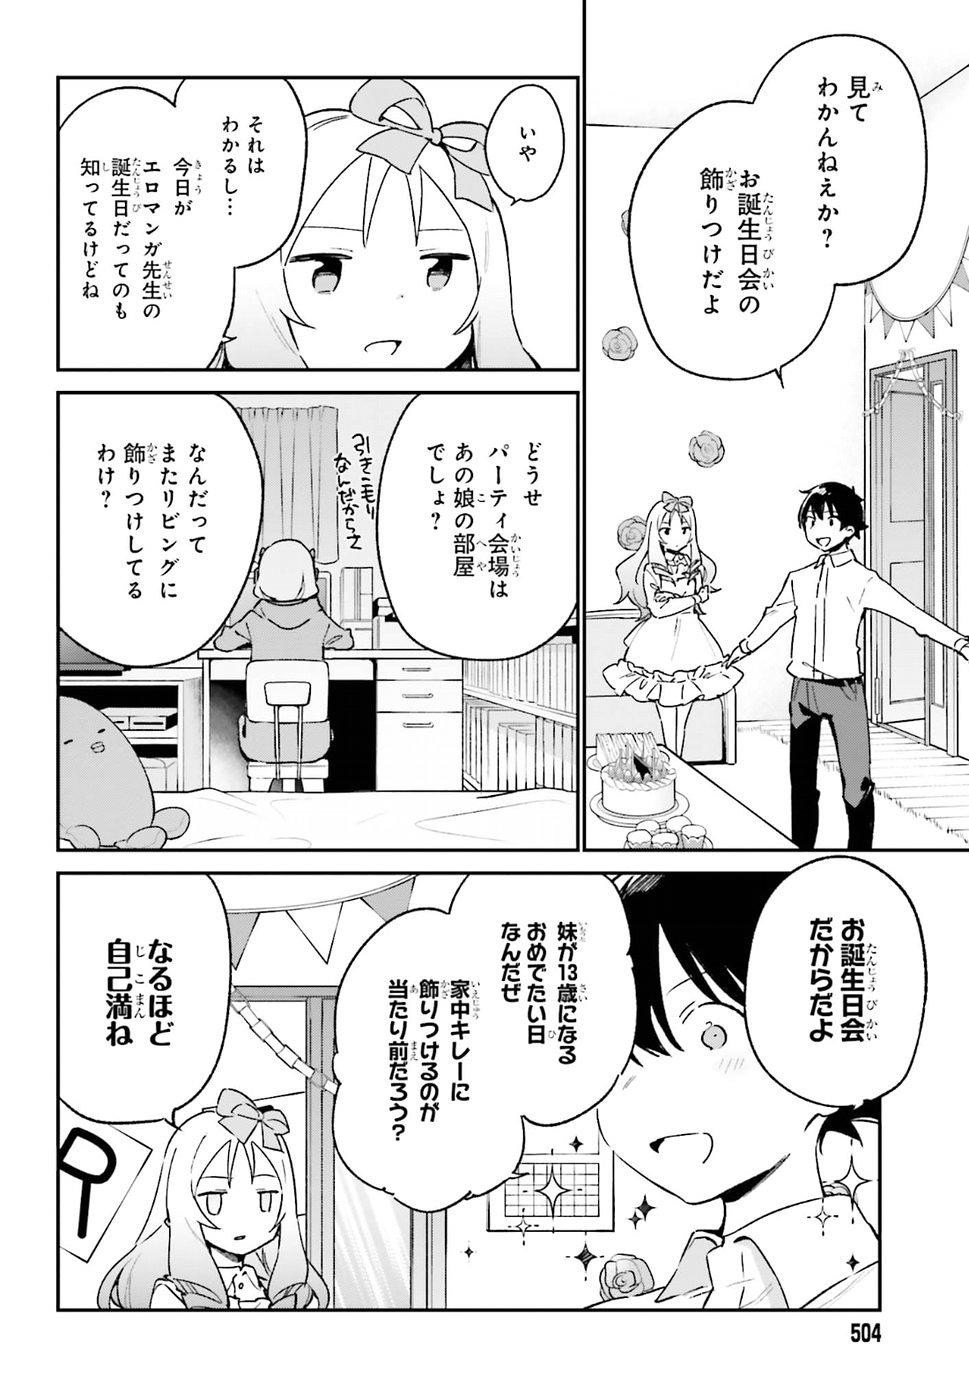 Ero Manga Sensei - Chapter 50 - Page 4